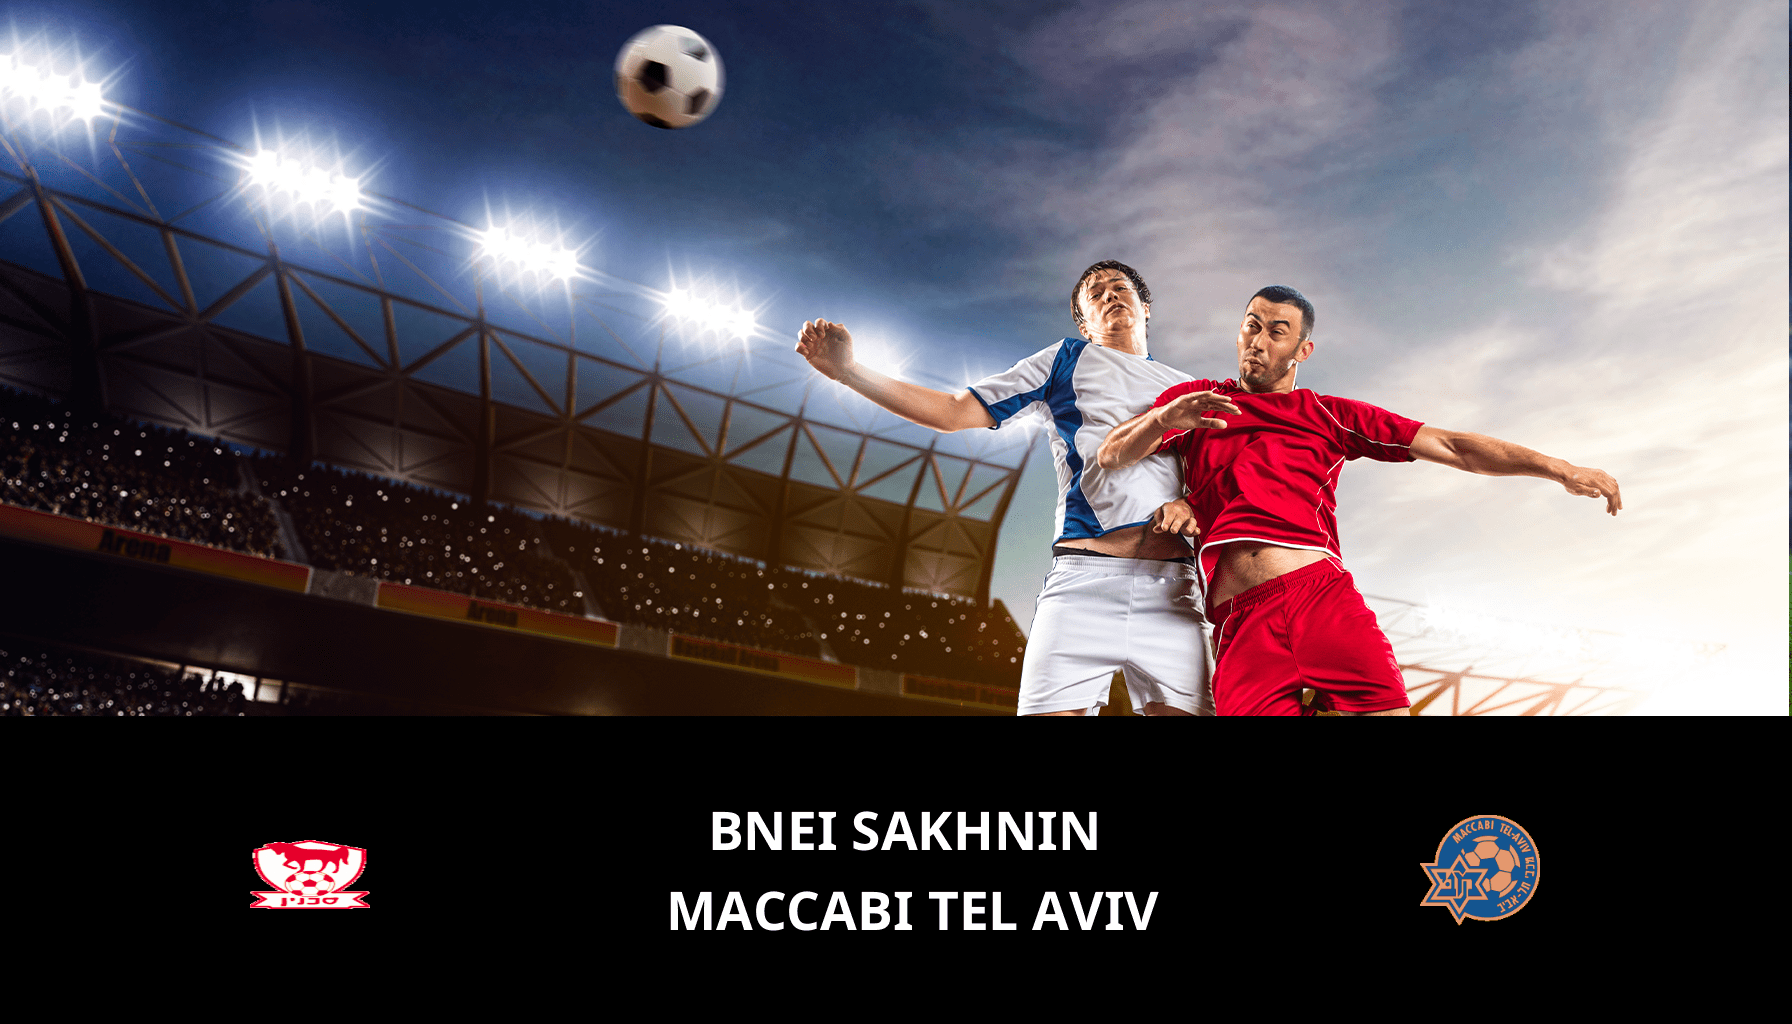 Previsione per Bnei Sakhnin VS Maccabi Tel Aviv il 06/05/2024 Analysis of the match